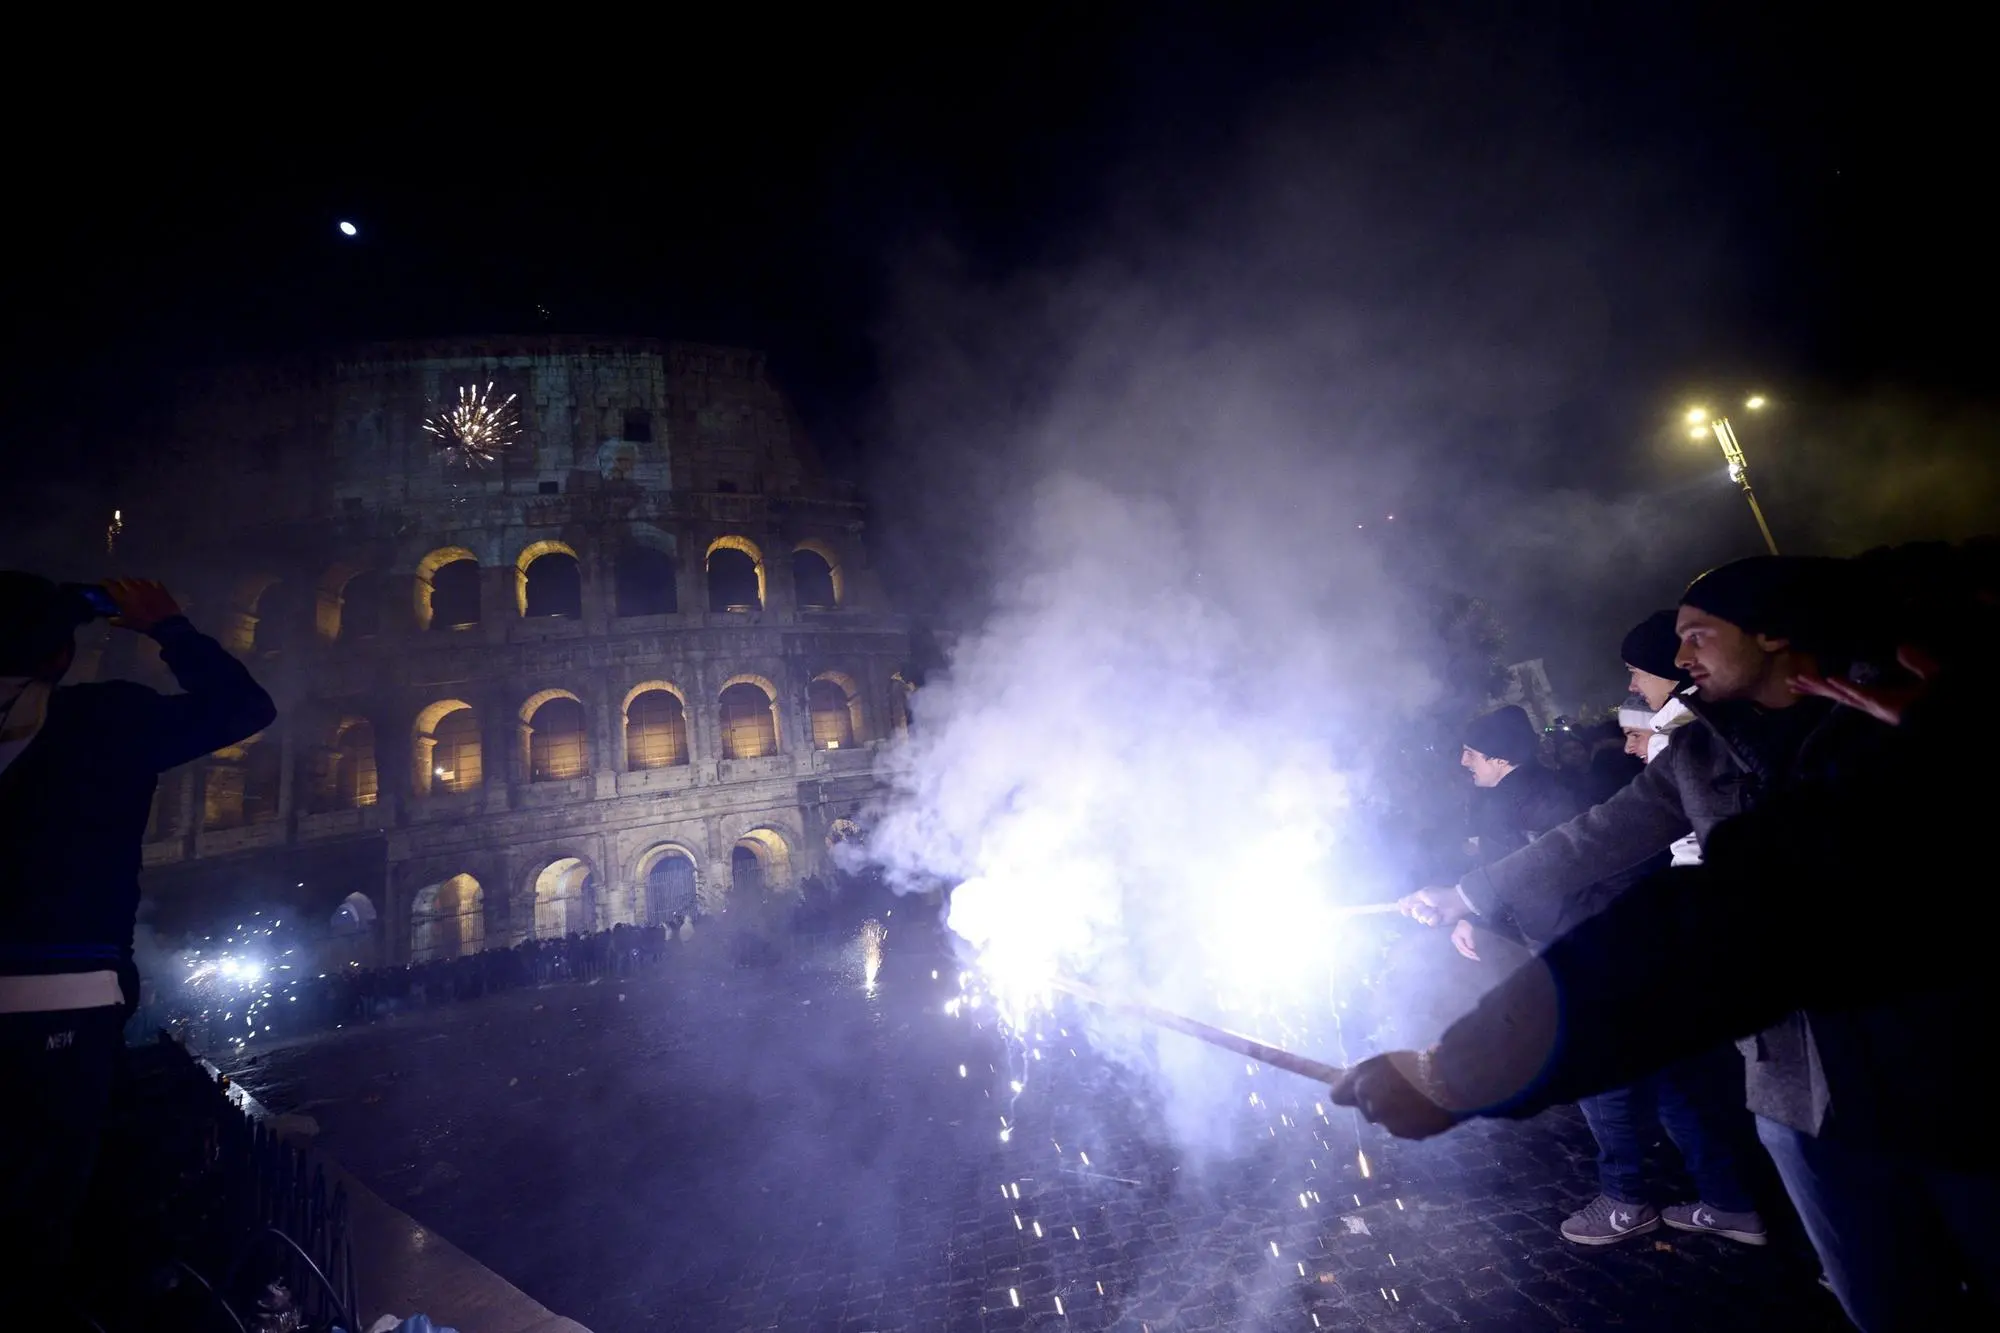 Festeggiamenti per il capodanno in via dei Fori Imperiali a Roma (foto Ansa)